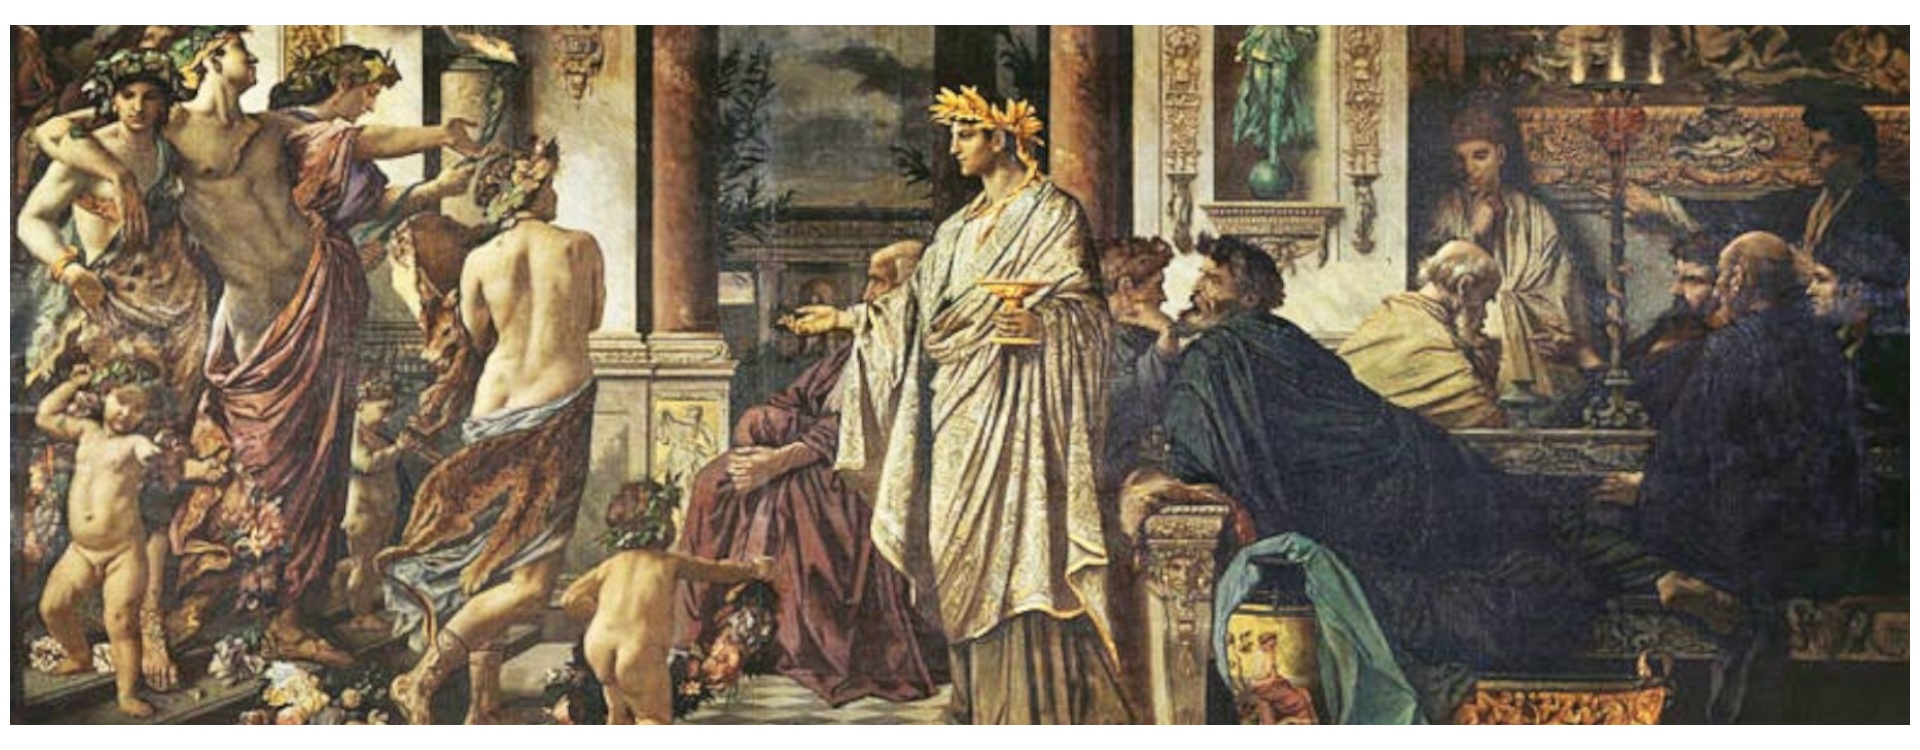 Simposio di Platone: Socrate e i suoi compagni seduti intorno a un